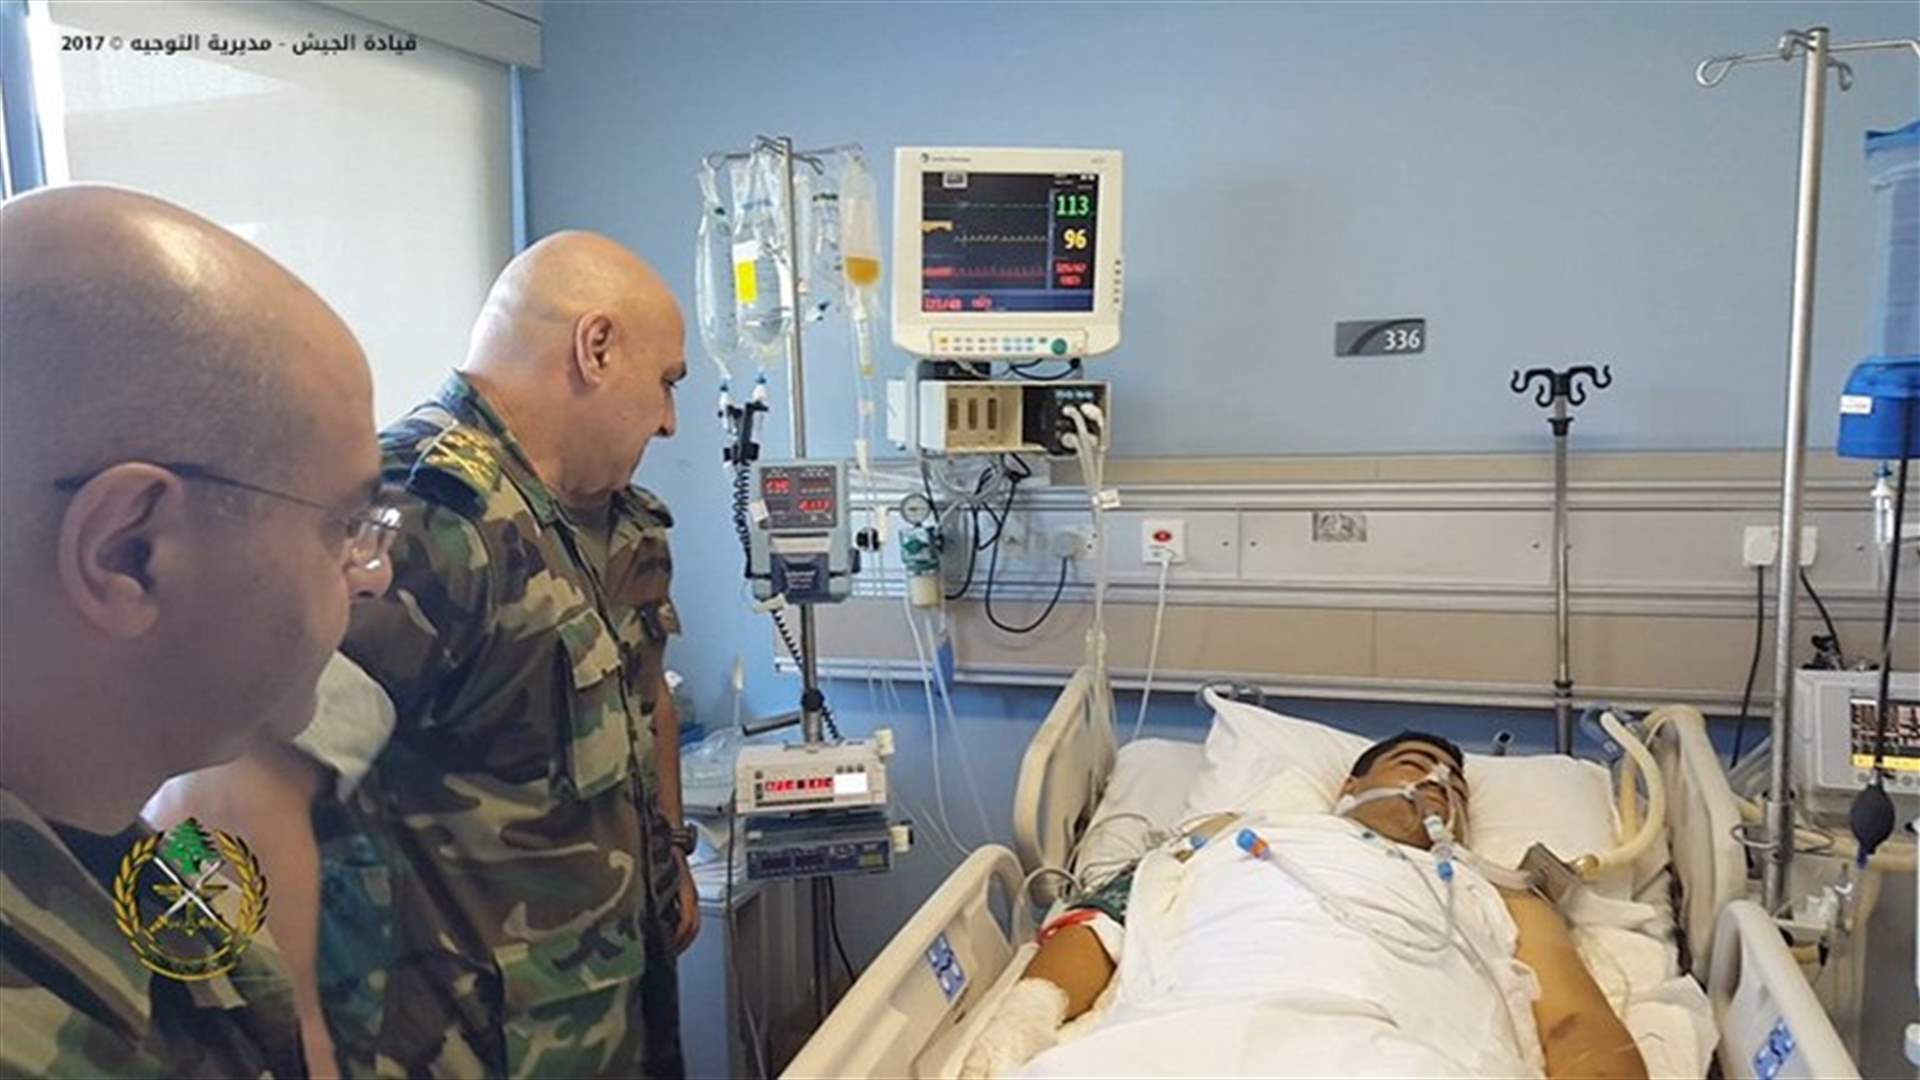 بالصور- قائد الجيش يتفقد العسكريين الجرحى